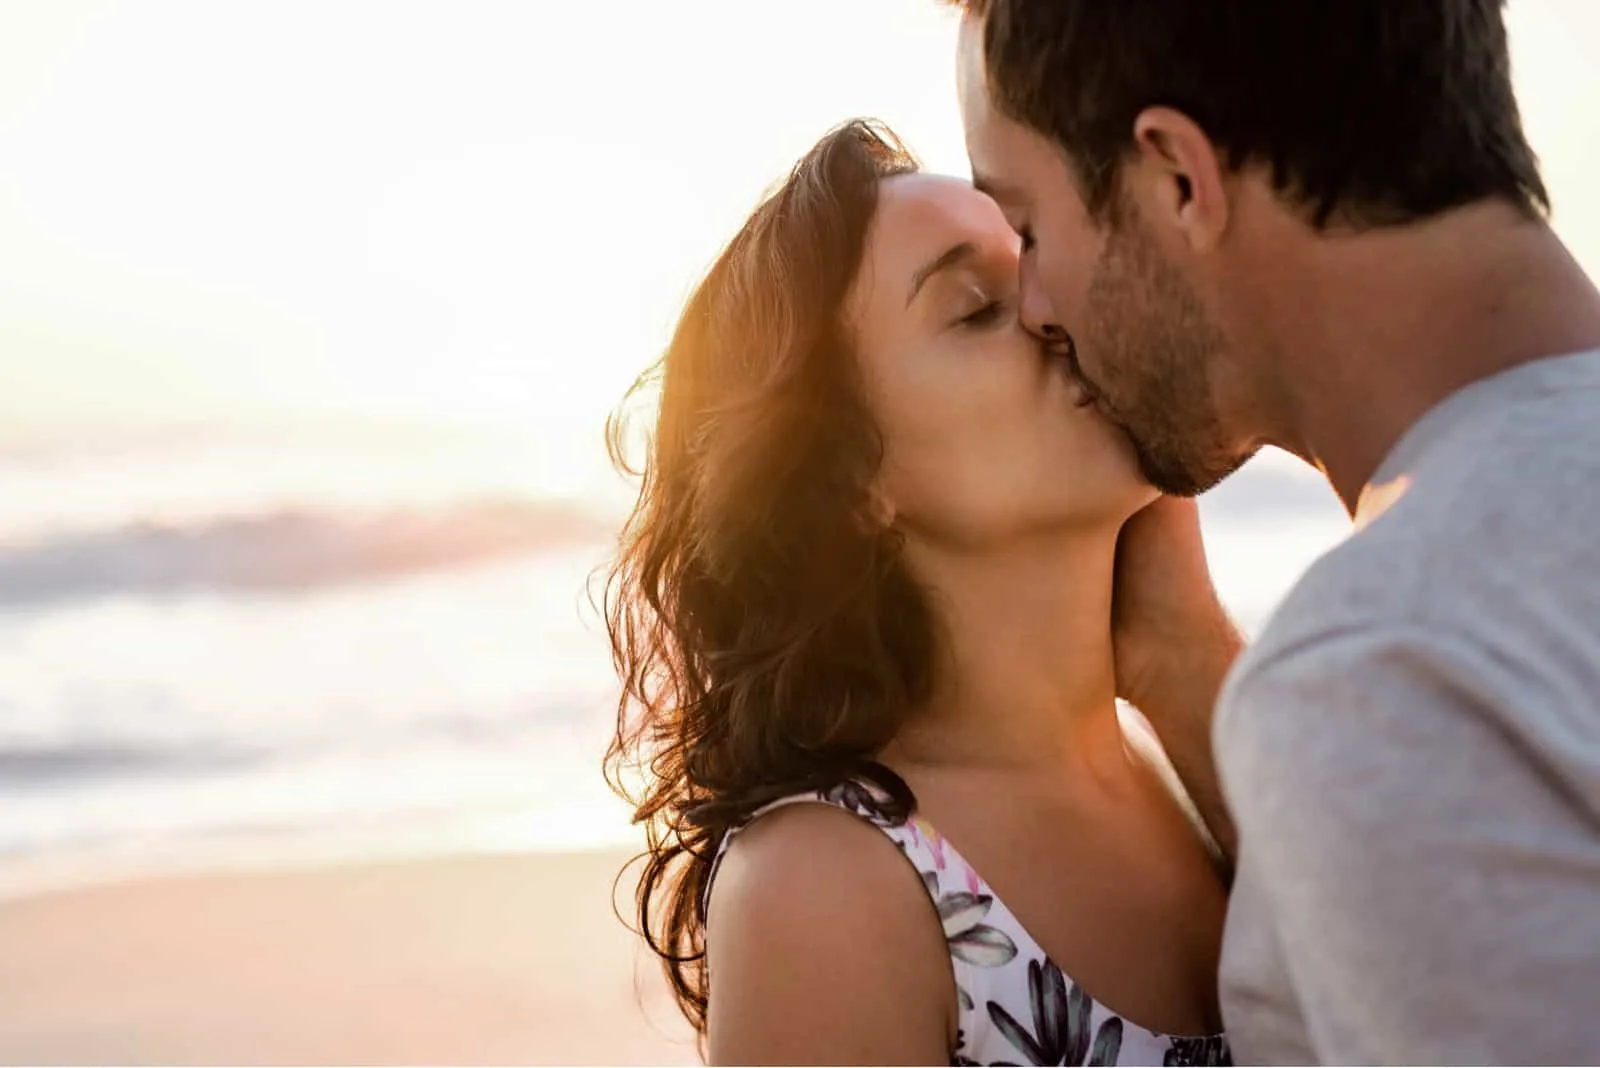 couple kissing on a sandy beach